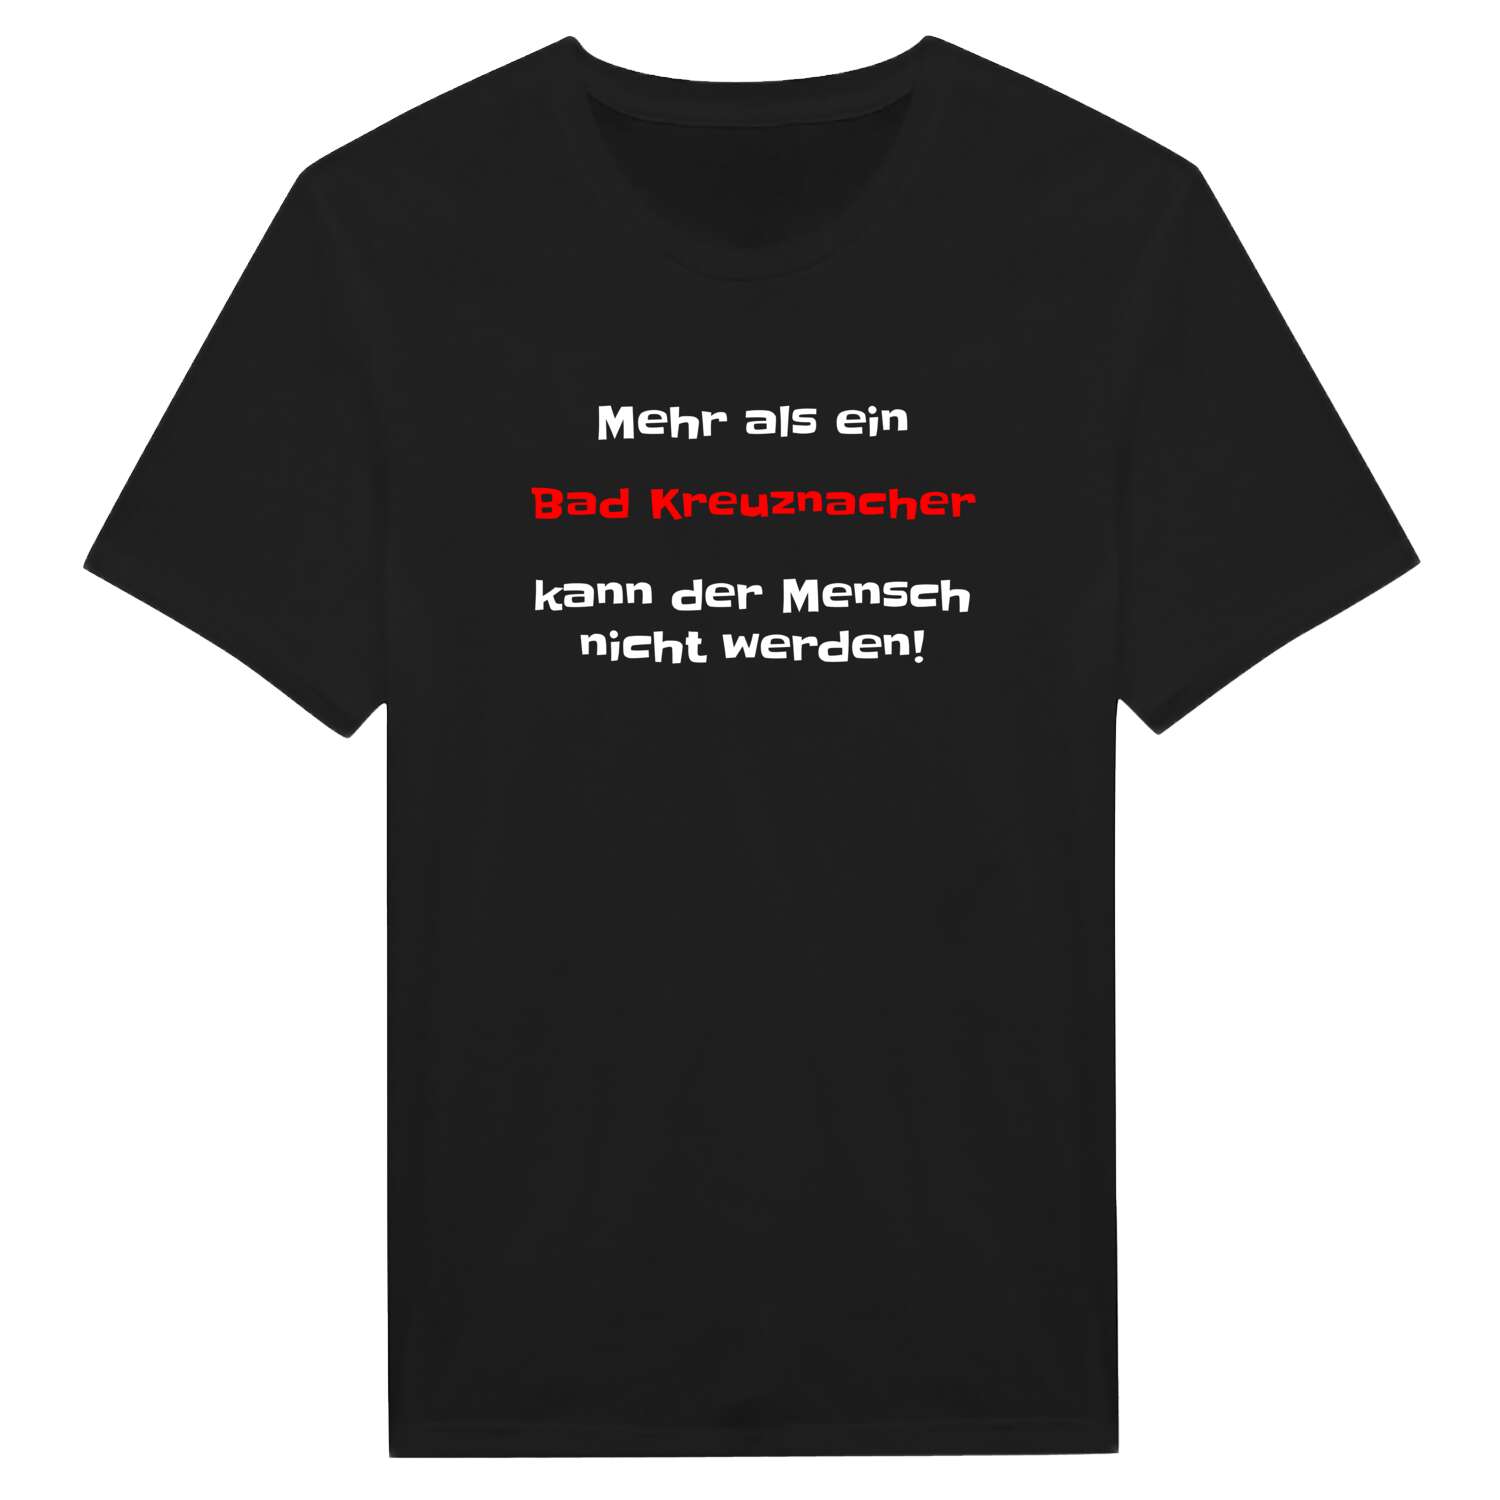 Bad Kreuznach T-Shirt »Mehr als ein«